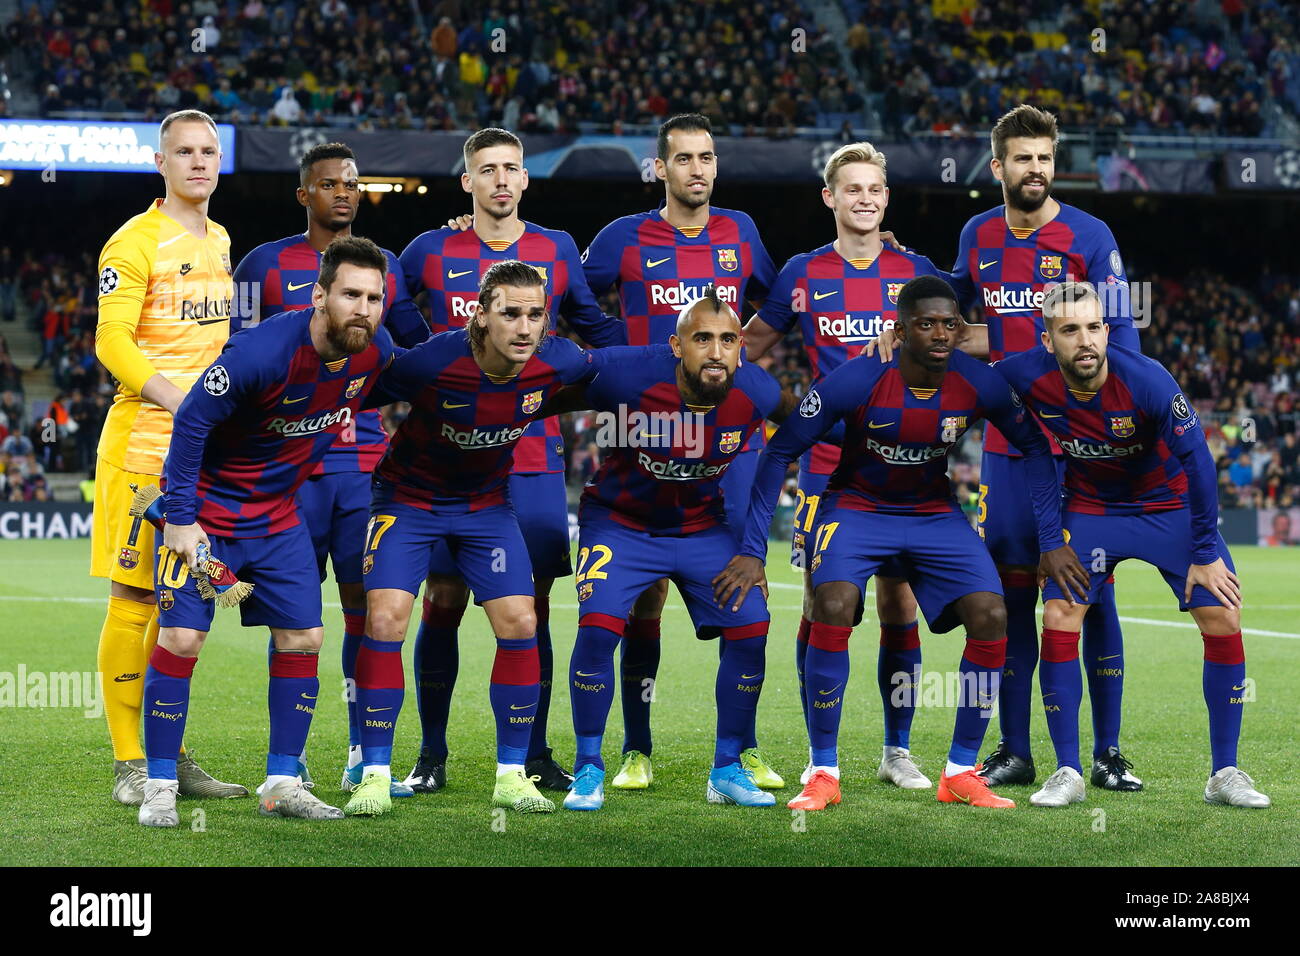 Barcelona, Spain. 5th Nov, 2019. SK Slavia Praha team group line